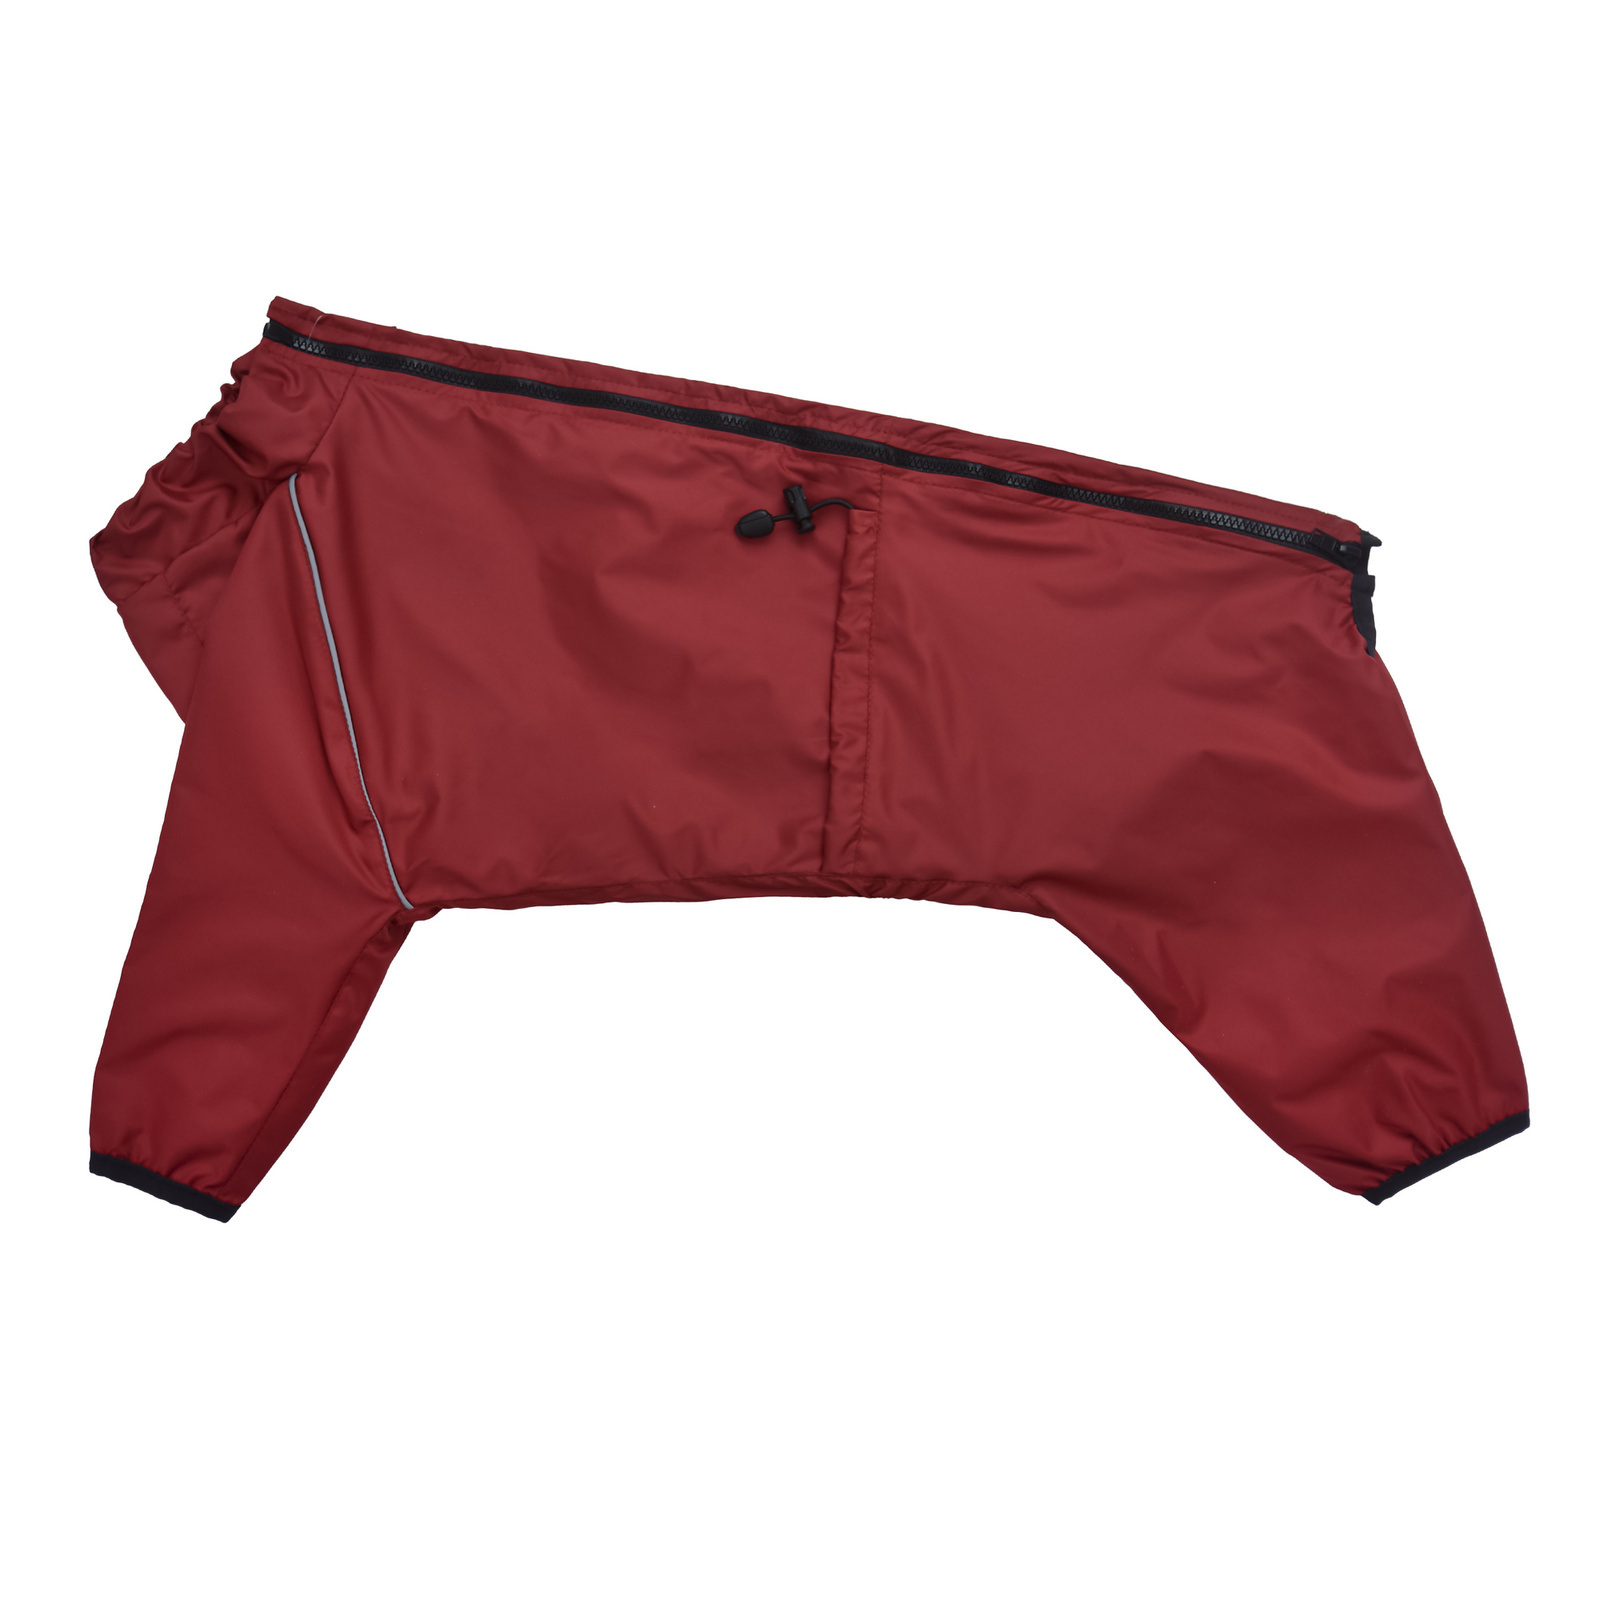 Tappi одежда Tappi одежда дождевик комбинезон Винум для средних и крупных собак, бордовый (М3)